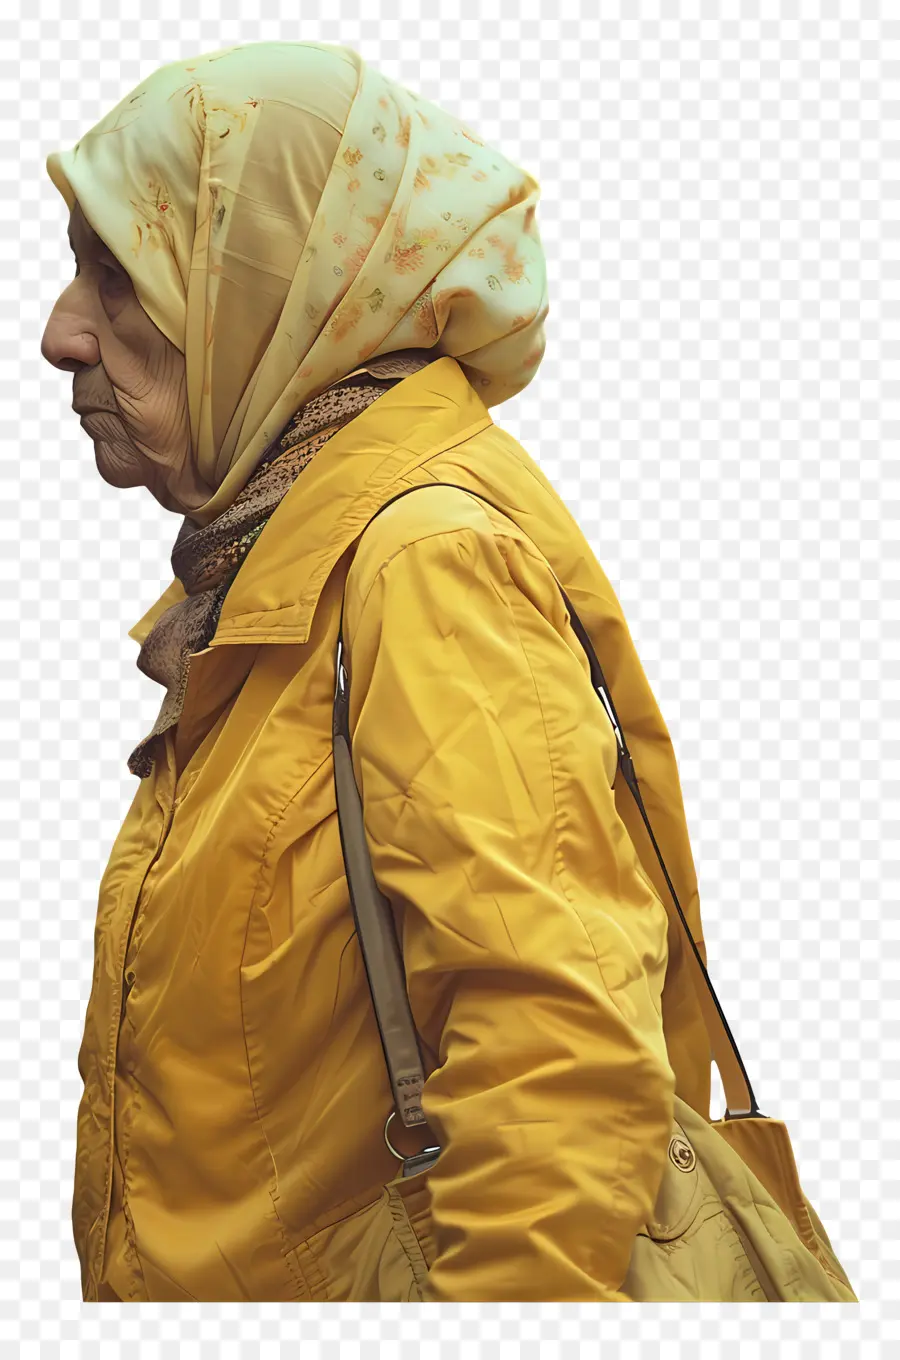 telefono cellulare - Donna anziana in giacca gialla con accessori